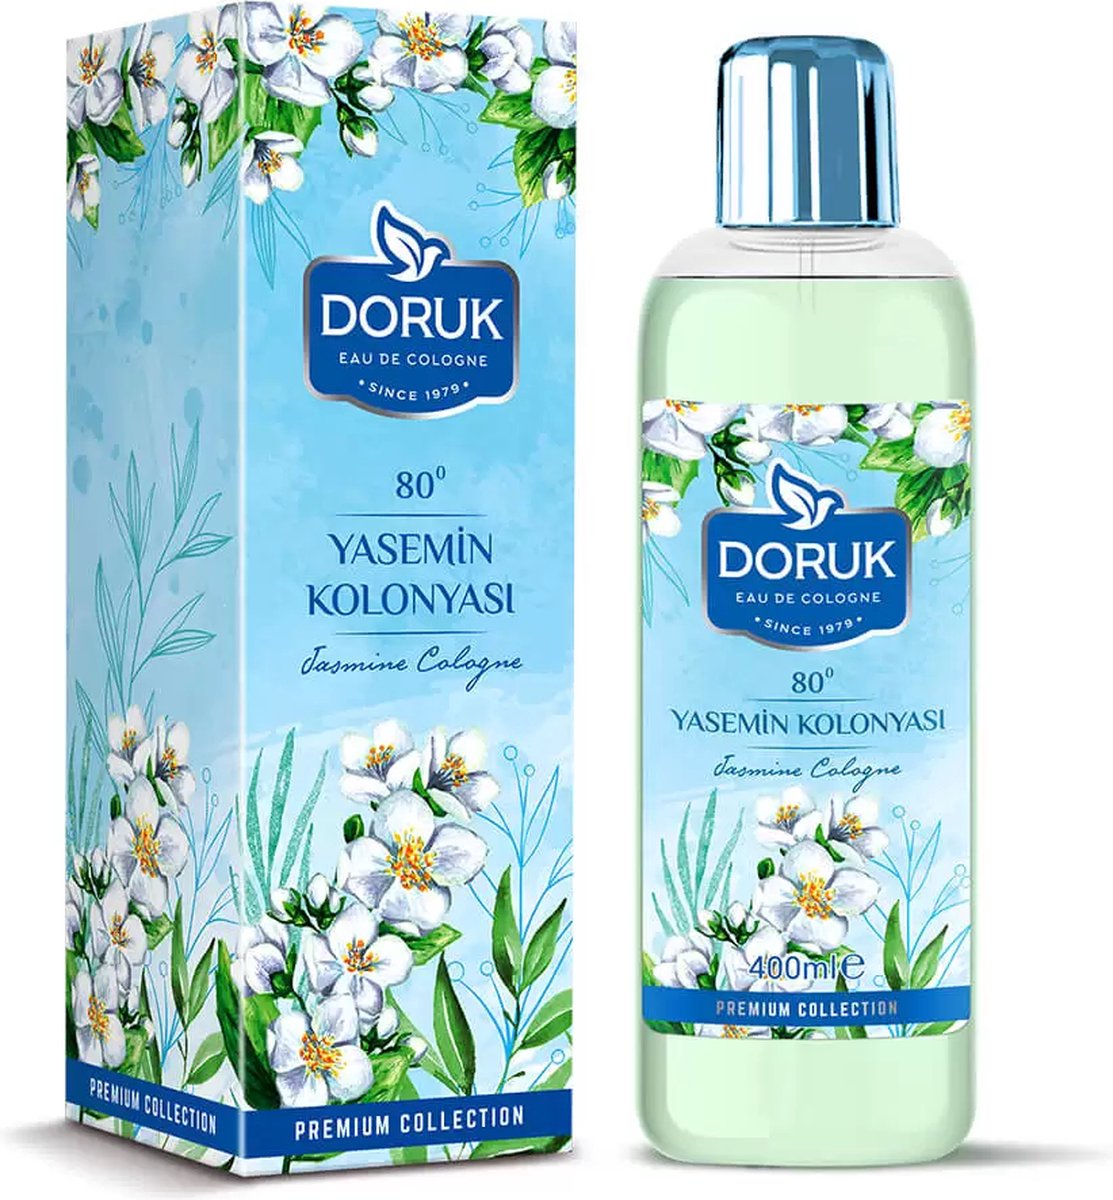 Doruk - Eau de cologne 400ml - 80° alcohol - Jasmine cologne - Optimale desinfectie van handen